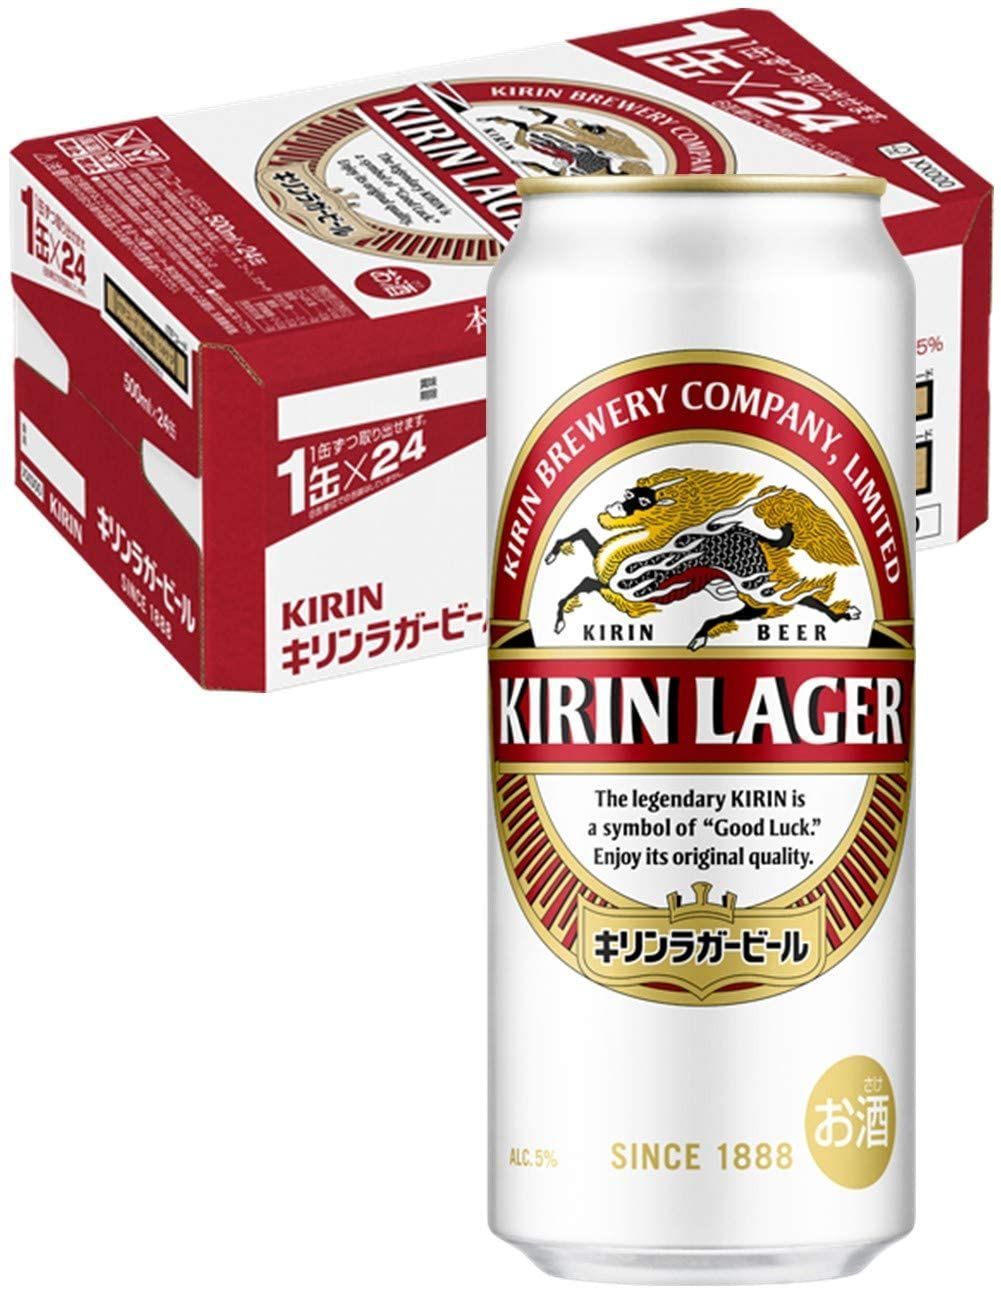 特価国産キリンラガービール 350ml×24缶  2ケース ビール